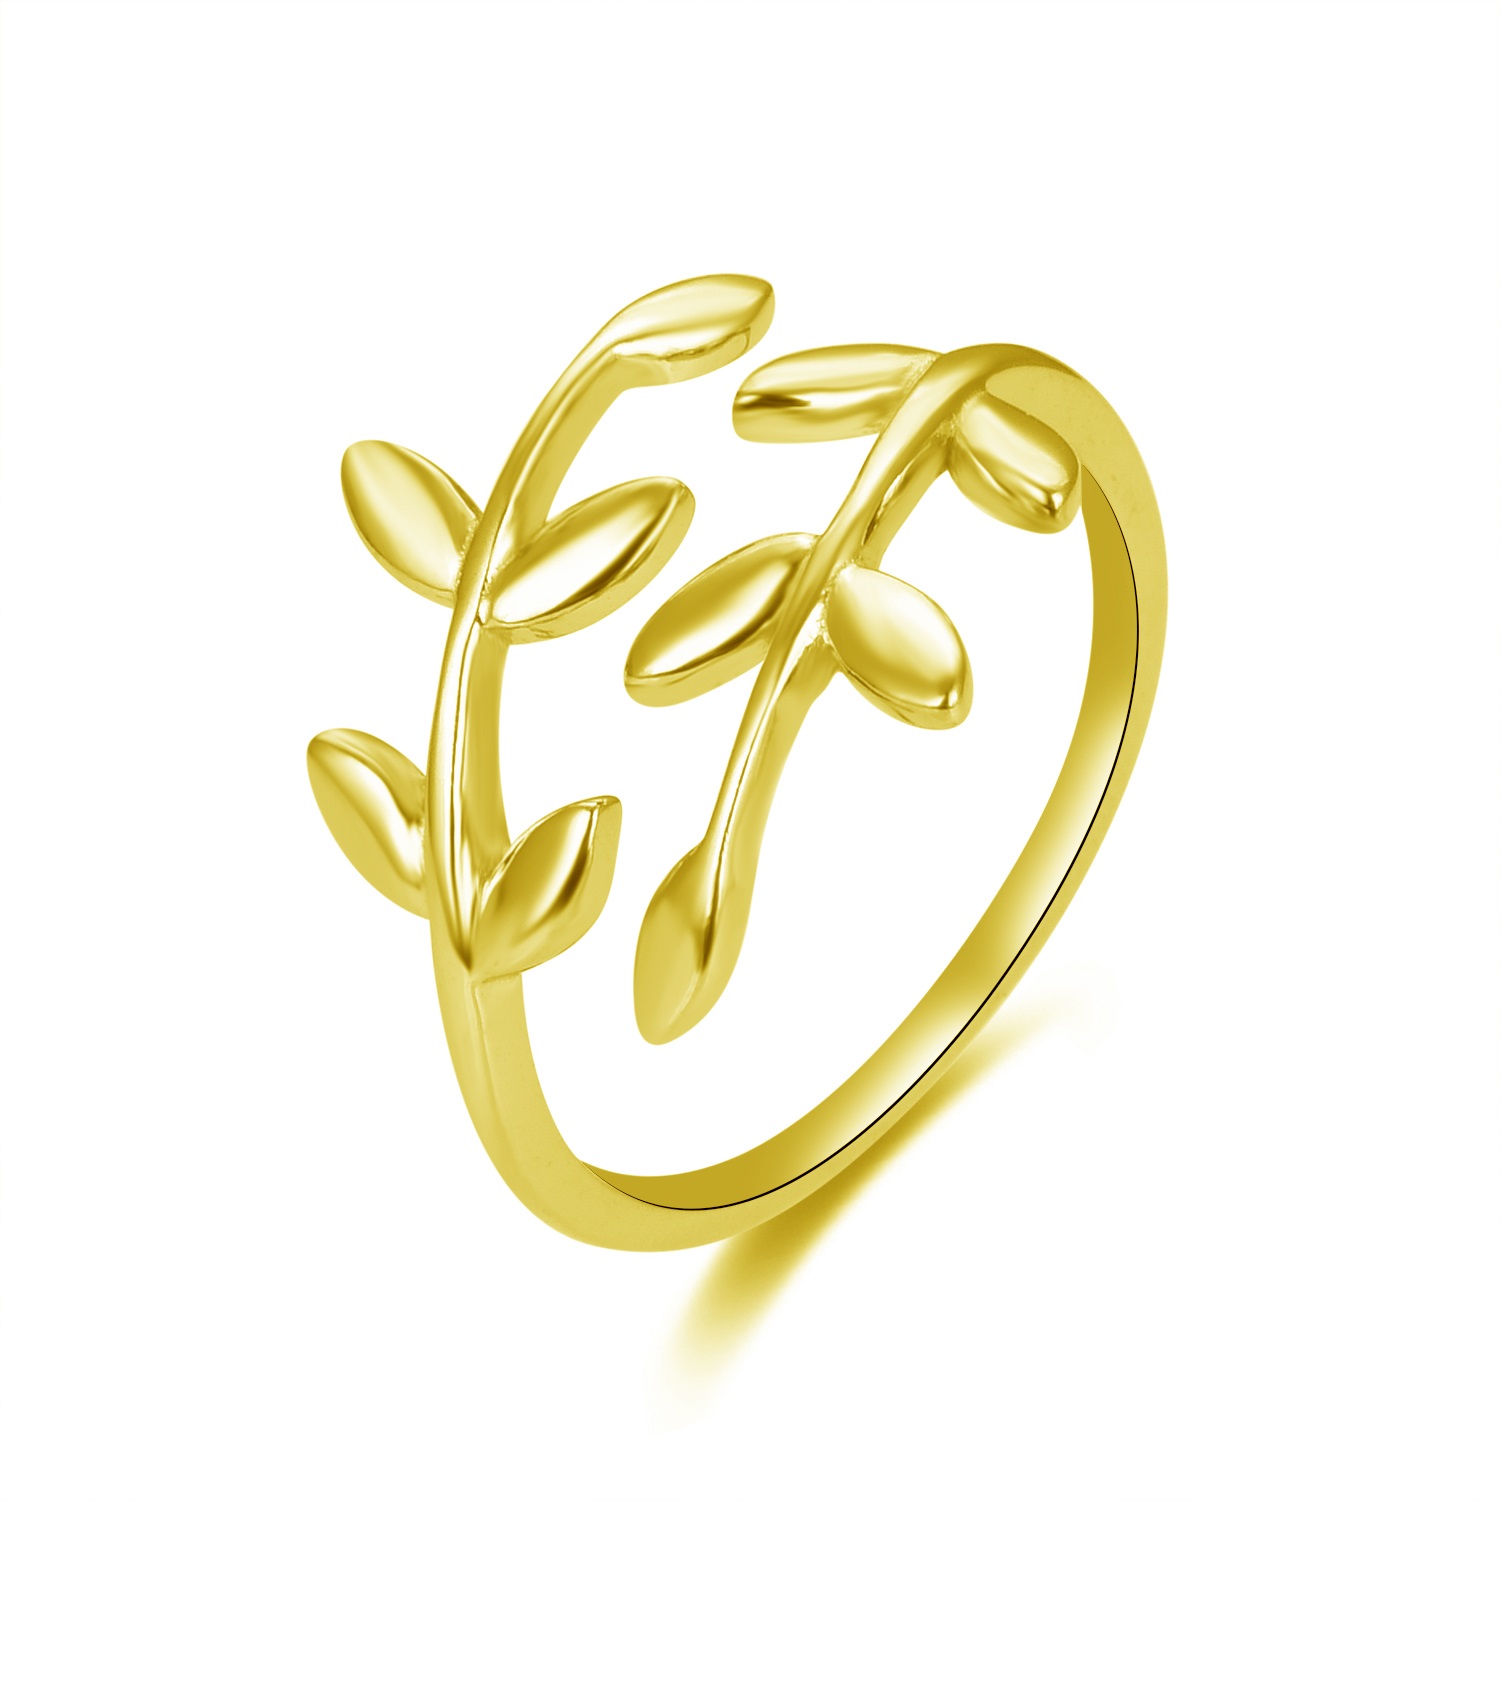 Beneto Otevřený pozlacený prsten s originálním designem AGG468-G